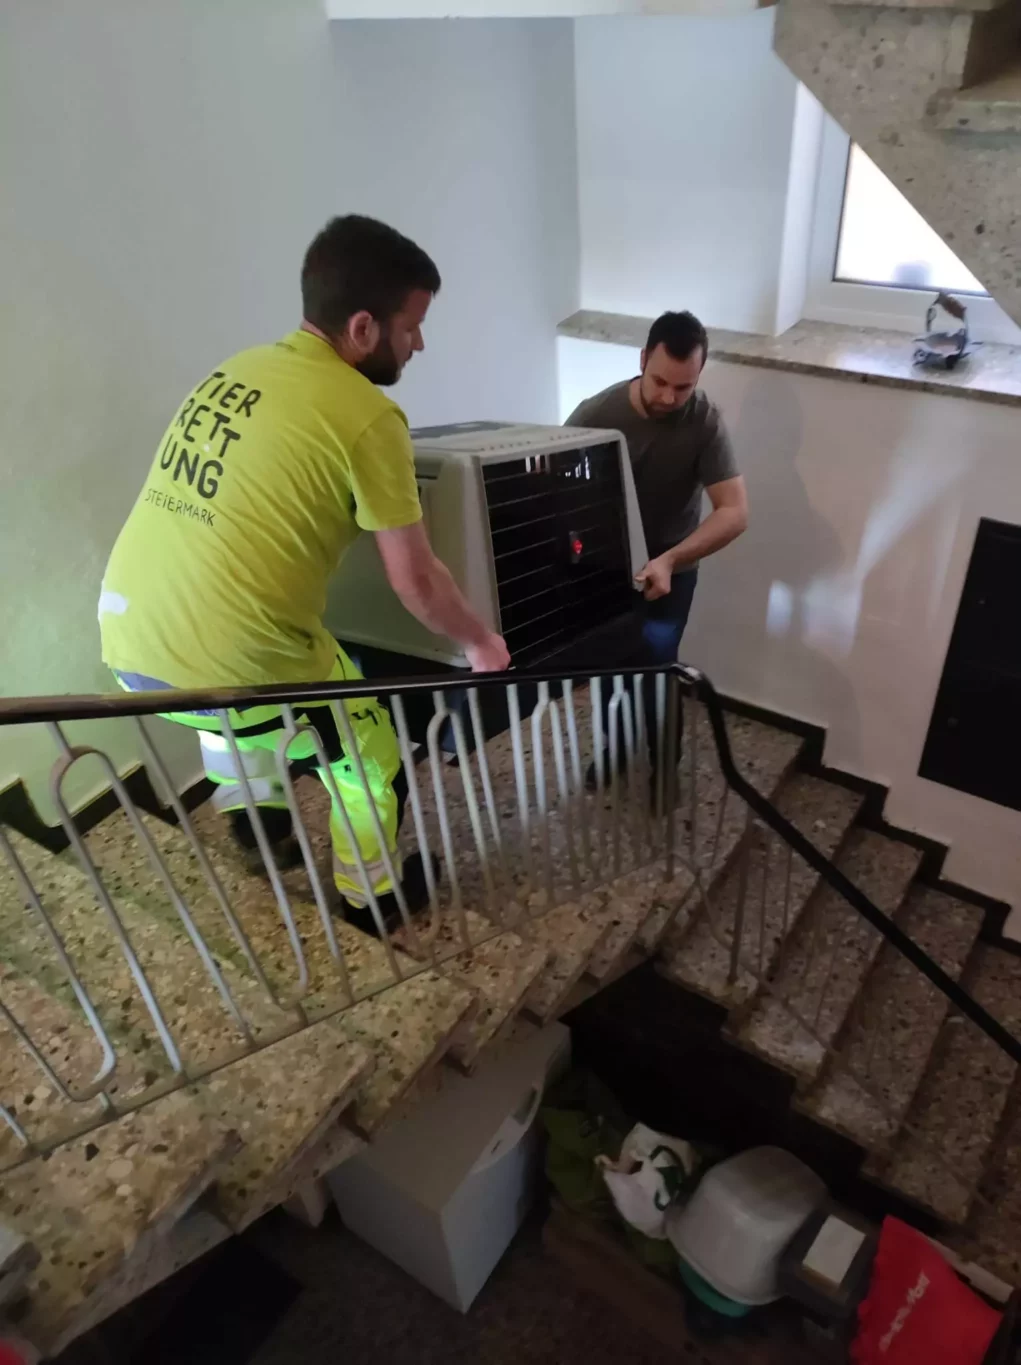 Drei Hunde in versperrten Zimmern ohne Futter tagelang zurückgelassen